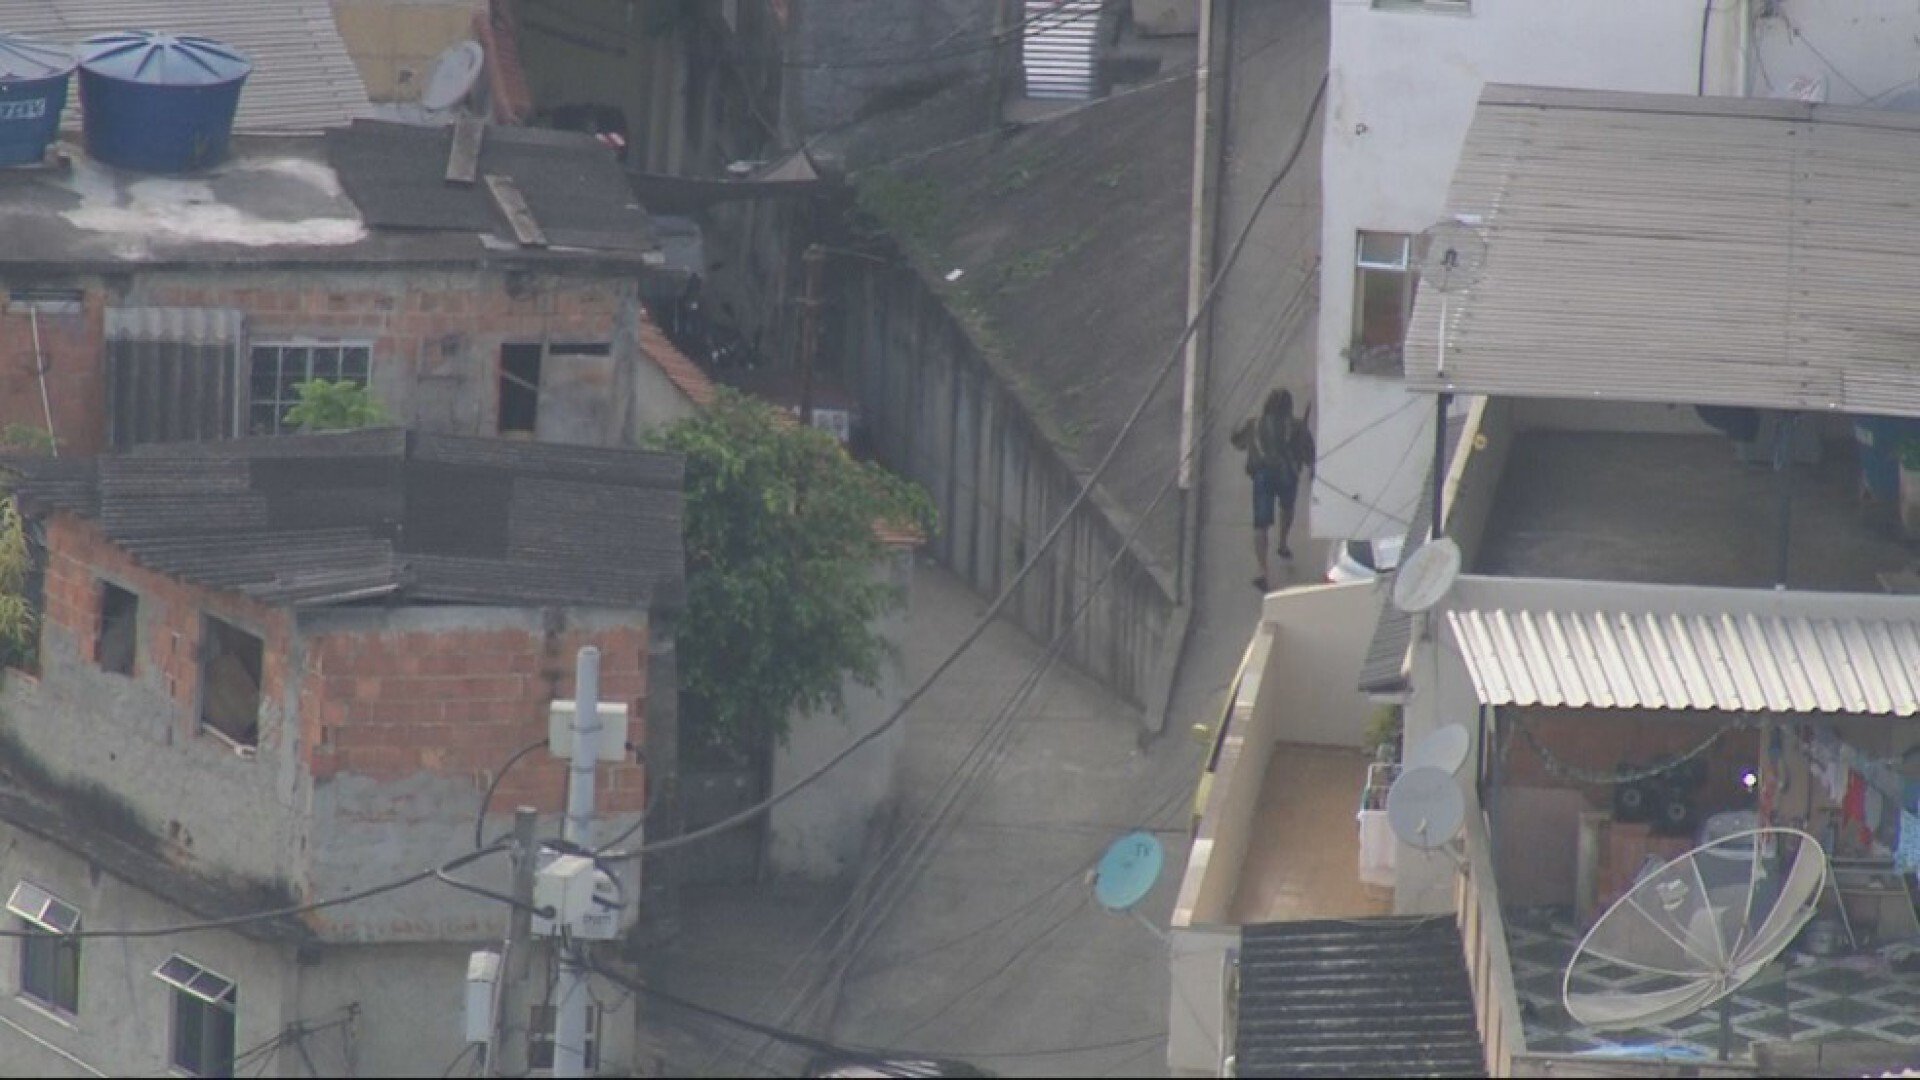 Bandidos circulam armados no Morro da Mangueira, Zona Norte - Reprodução/ TV Globo